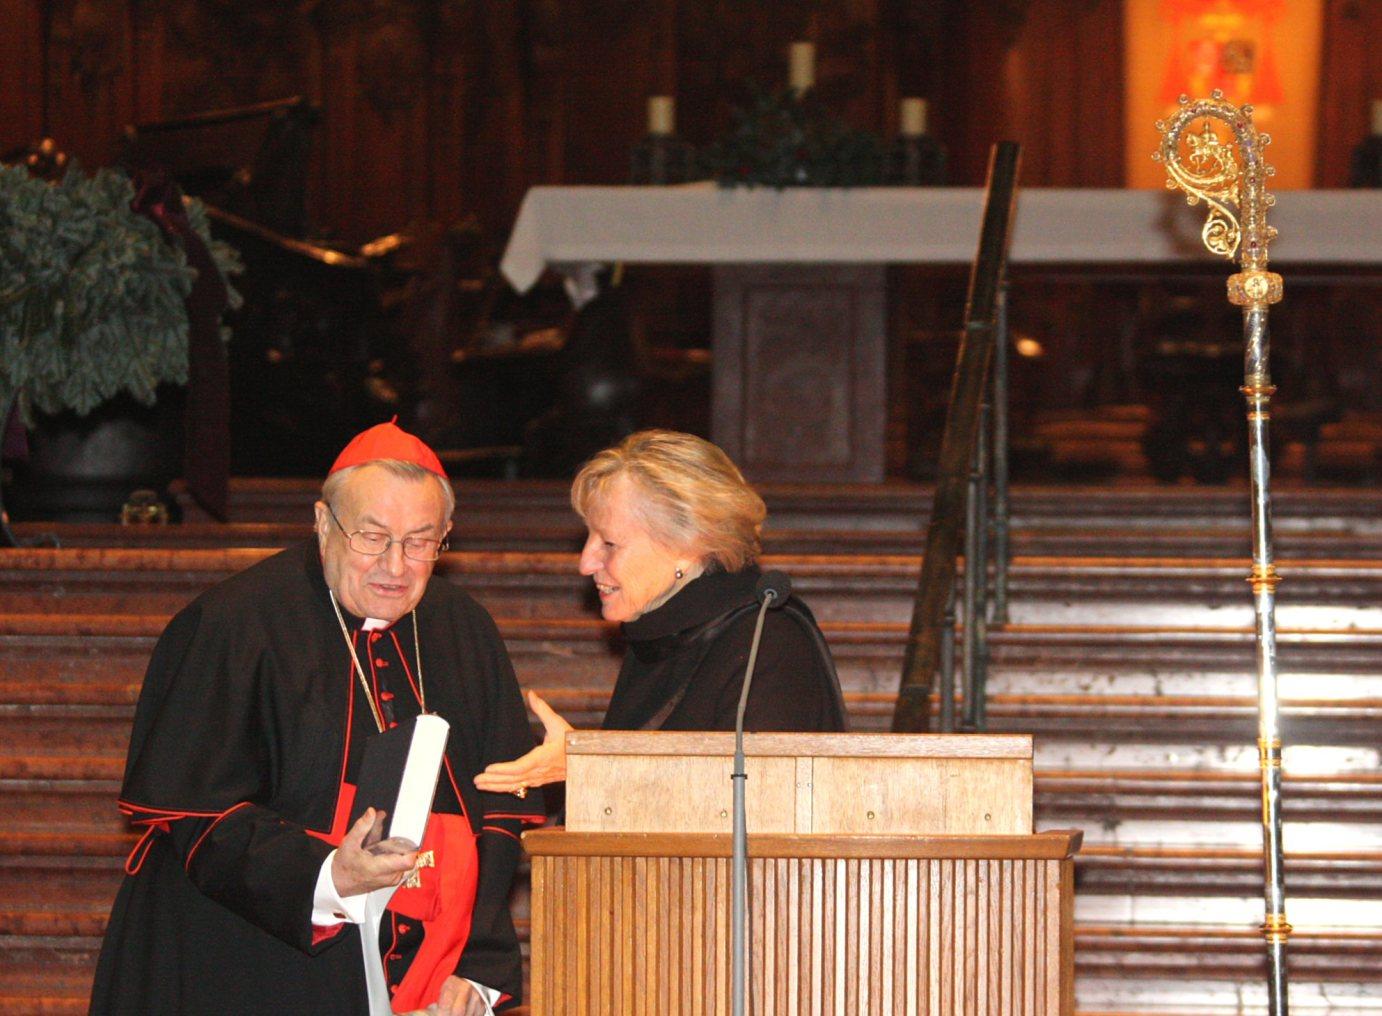 Mainz, 25. November 2011: Professorin Dr. Elke Lütjen-Drecoll (rechts), übergab im Mainzer Dom die neu herausgegebenen Hirtenbriefe von Ketteler aus den Jahren 1850 bis 1877 an Kardinal Karl Lehmann.